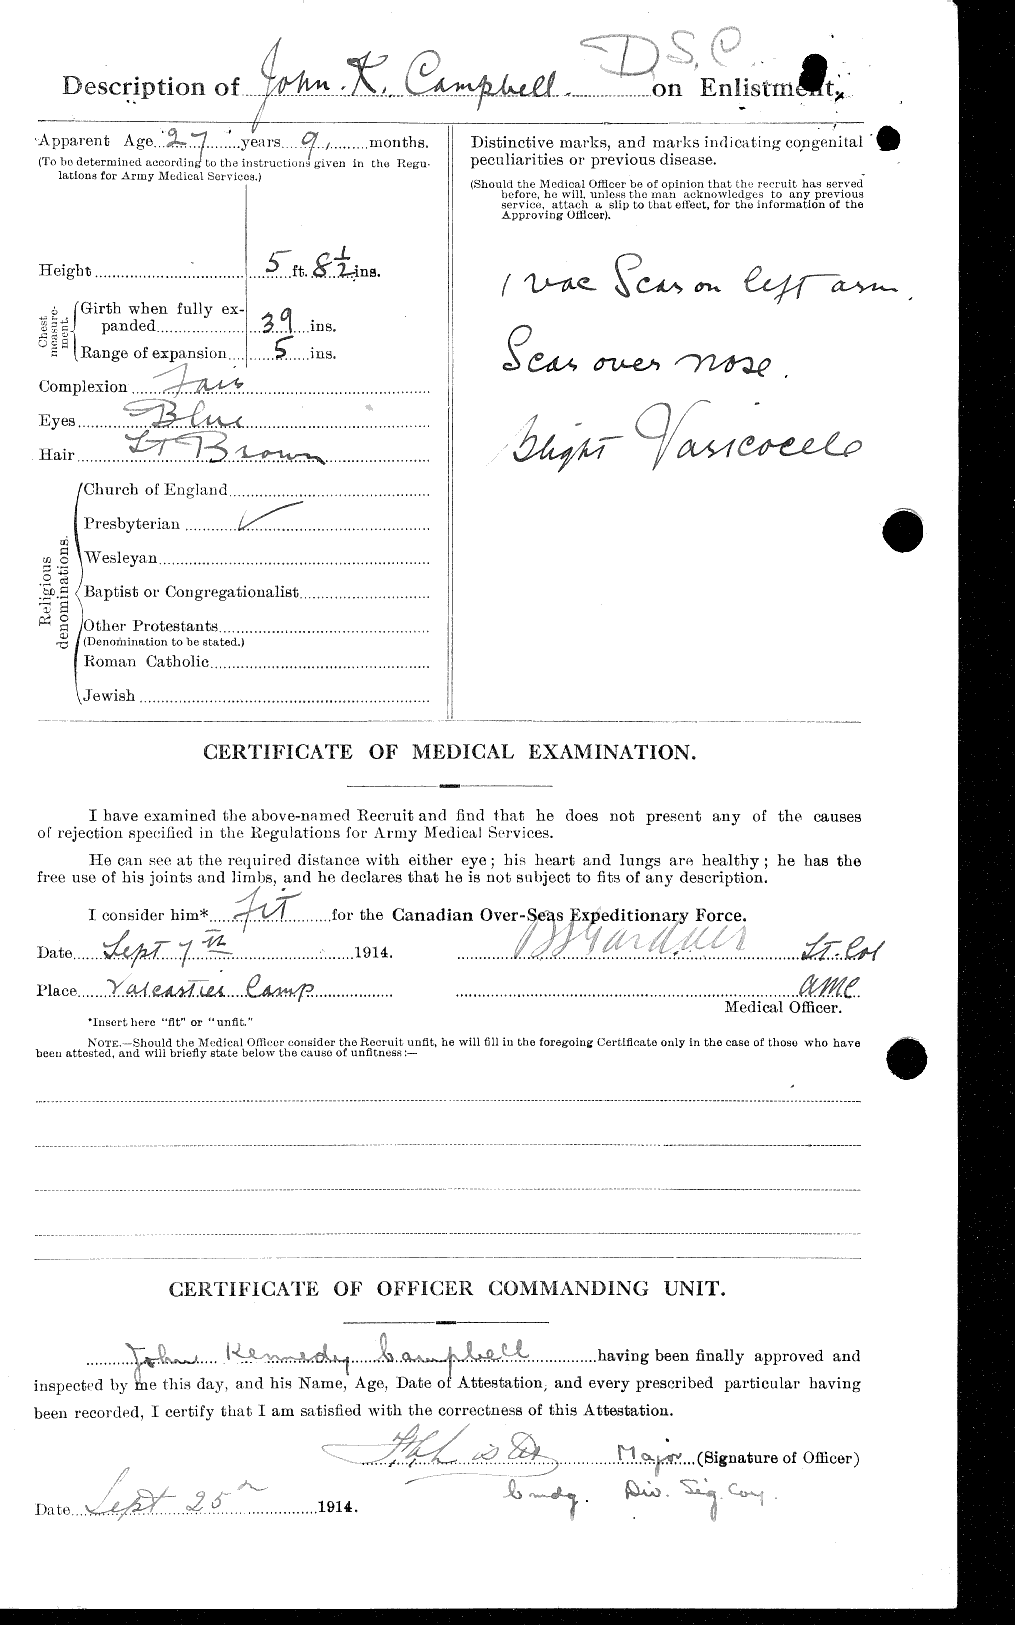 Dossiers du Personnel de la Première Guerre mondiale - CEC 003754b